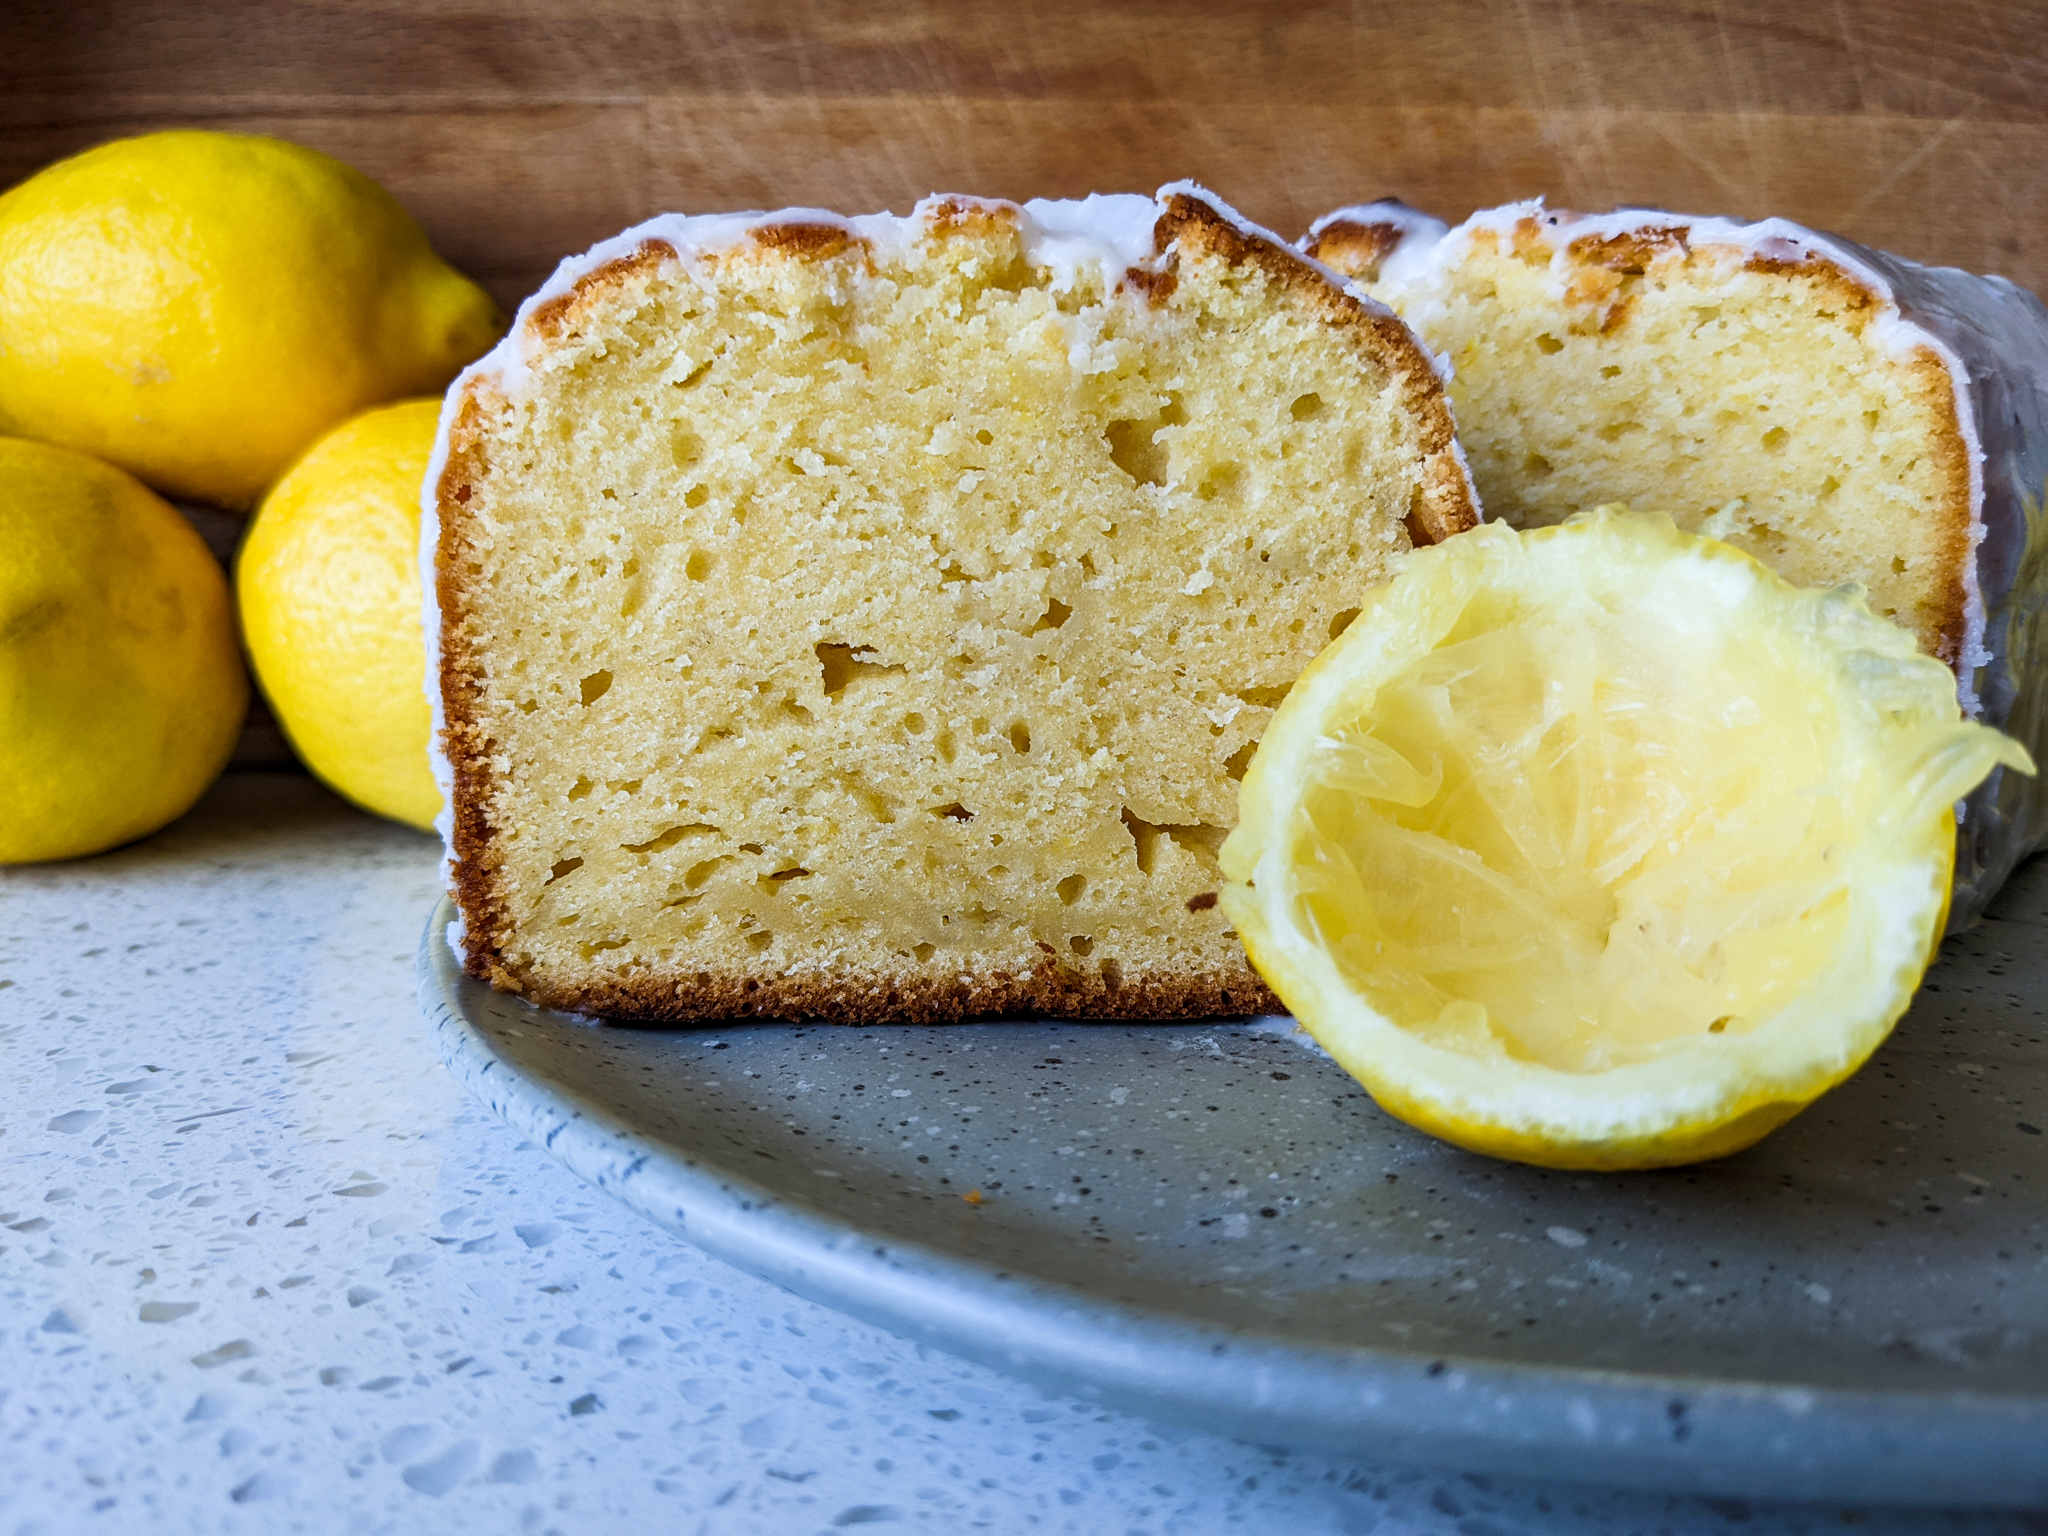 Lemon loaf cake cut in half with a juiced half lemon